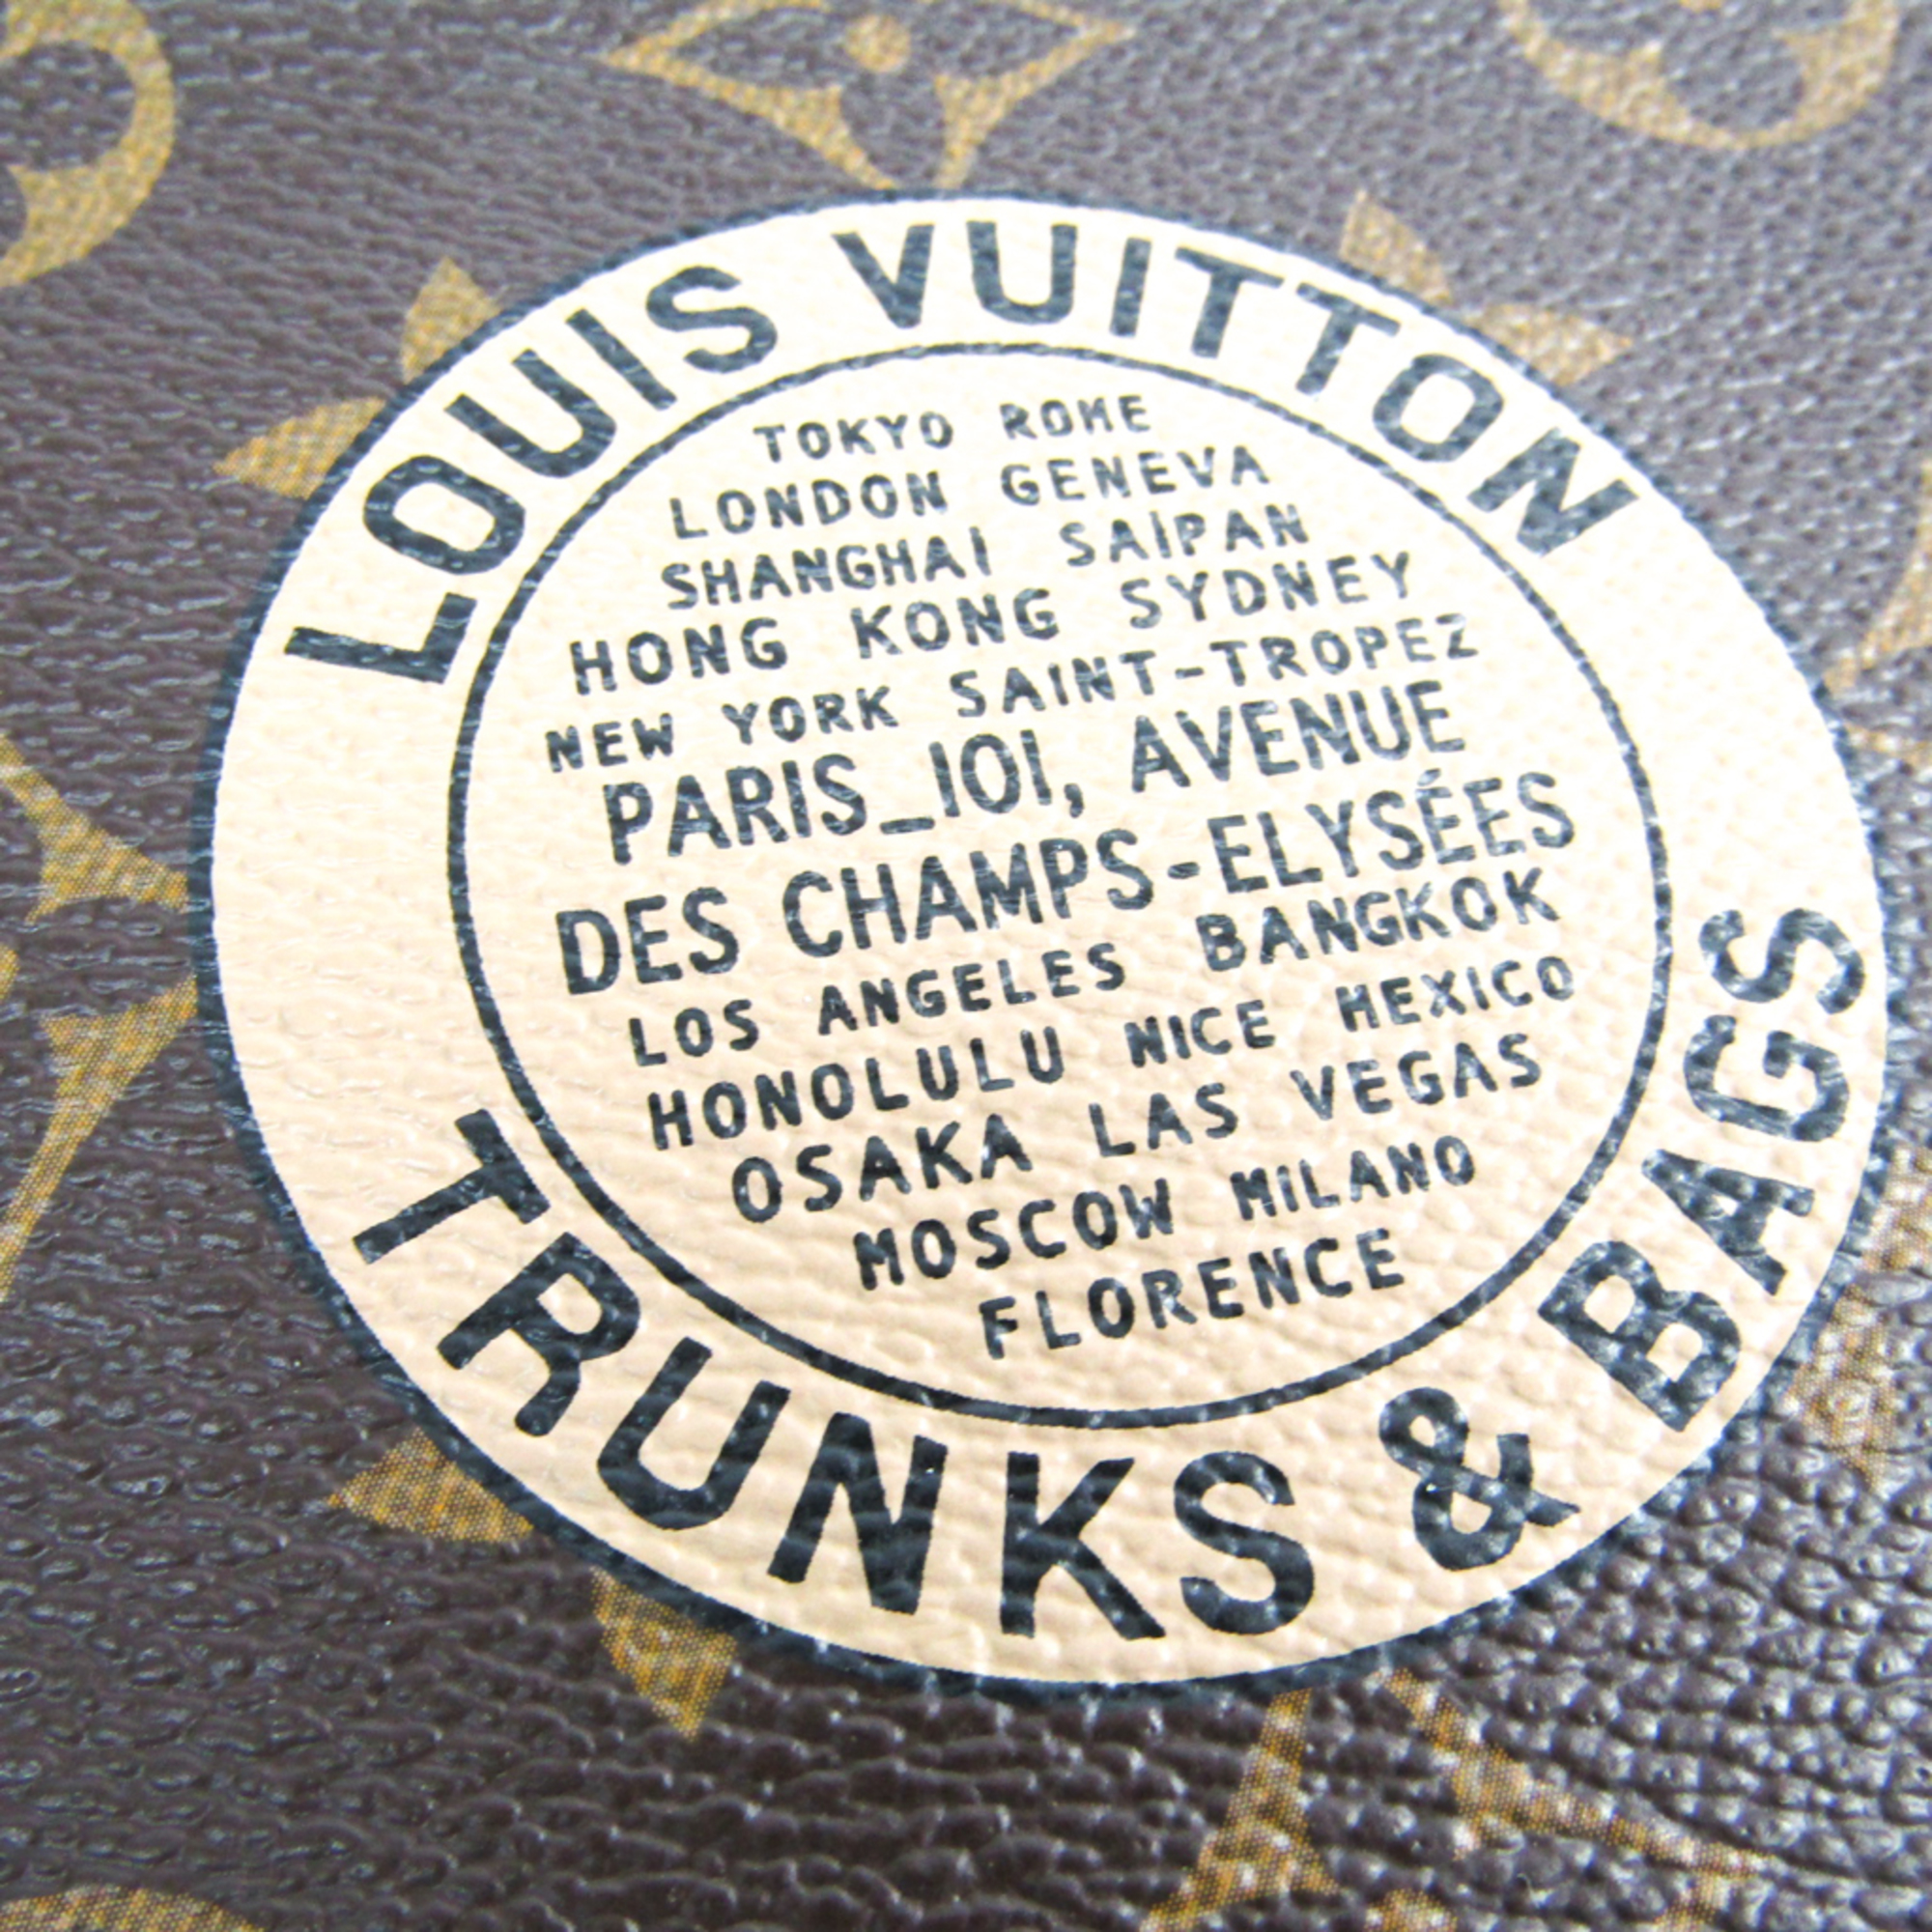 Louis Vuitton Monogram M58024 Monogram Long Wallet (bi-fold) Monogram